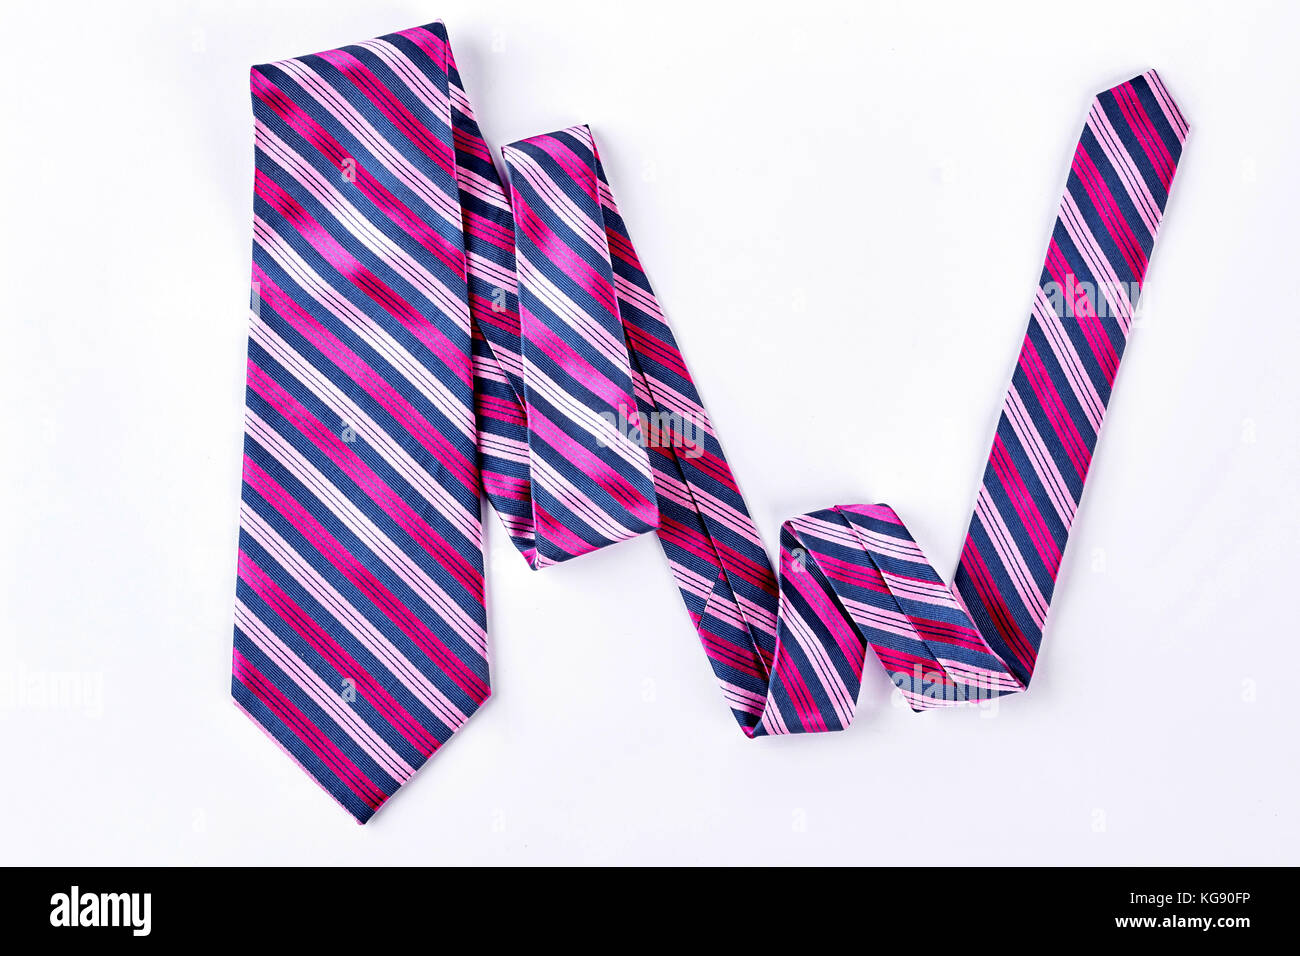 Striped necktie on white background. Stock Photo